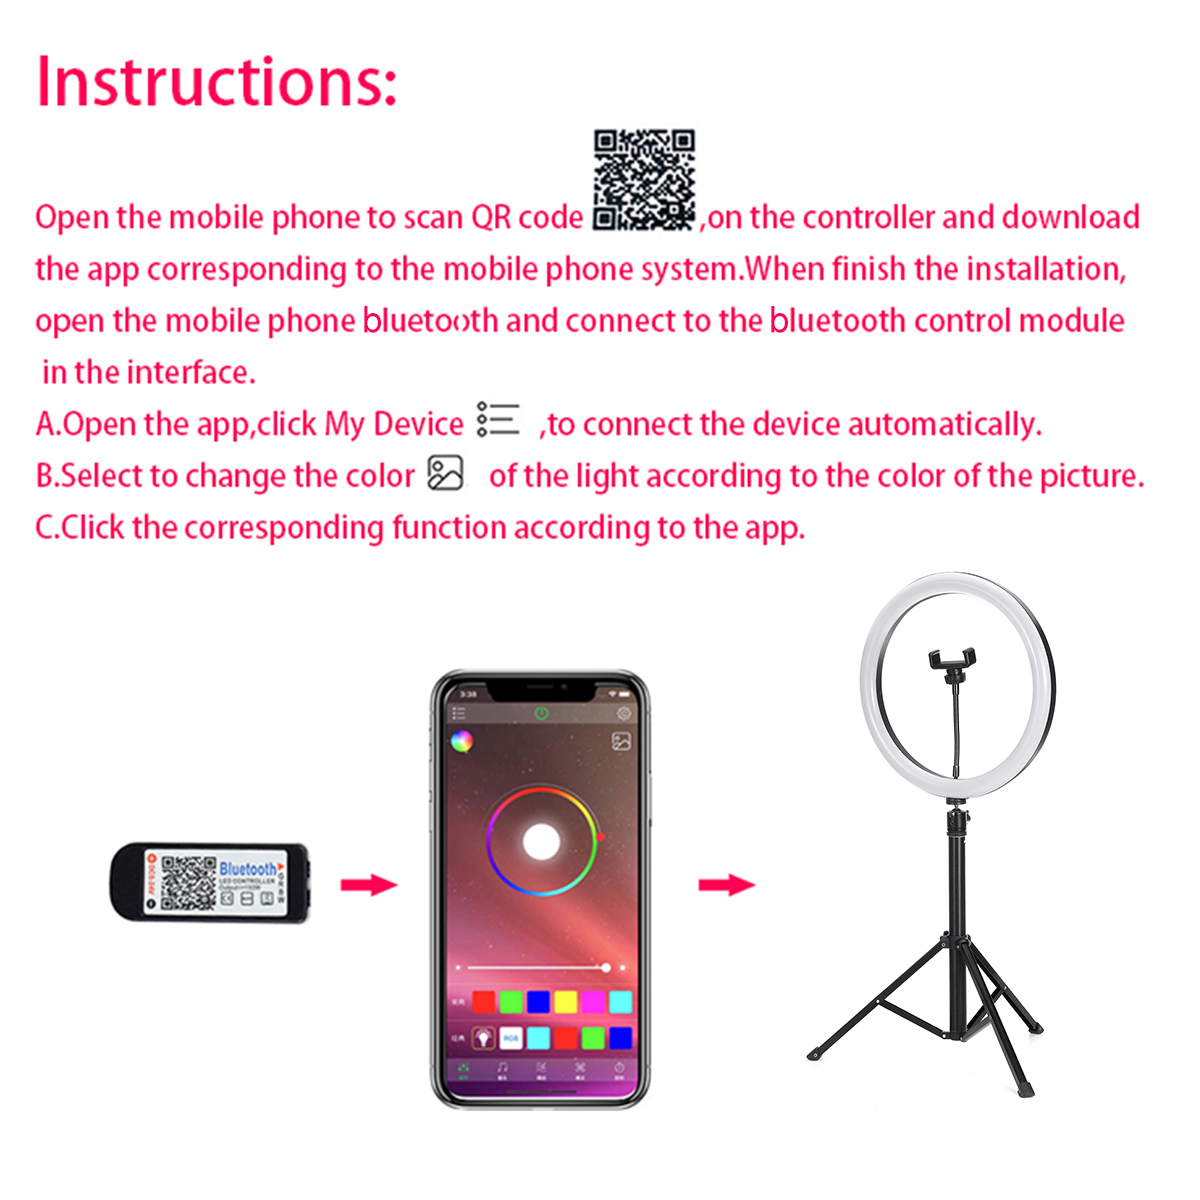 1-Set-Flash-LED-Fill-Light-Desktop-Live-Removable-Tripod-Stand-Phone-Clip-Holder-1633475-8